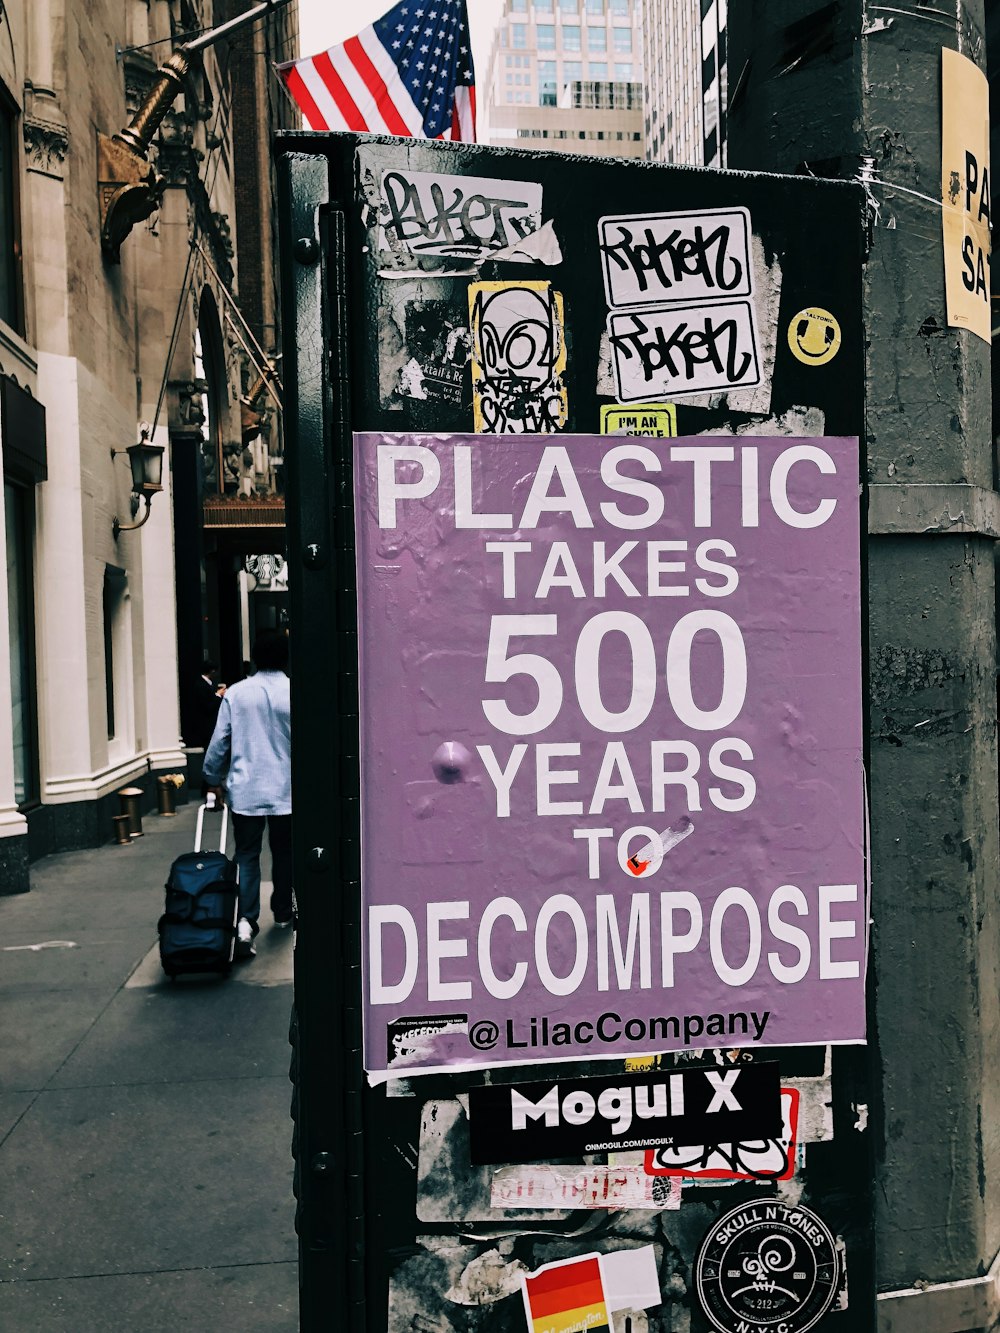 El plástico tarda 500 años en descomponer el póster en una superficie negra